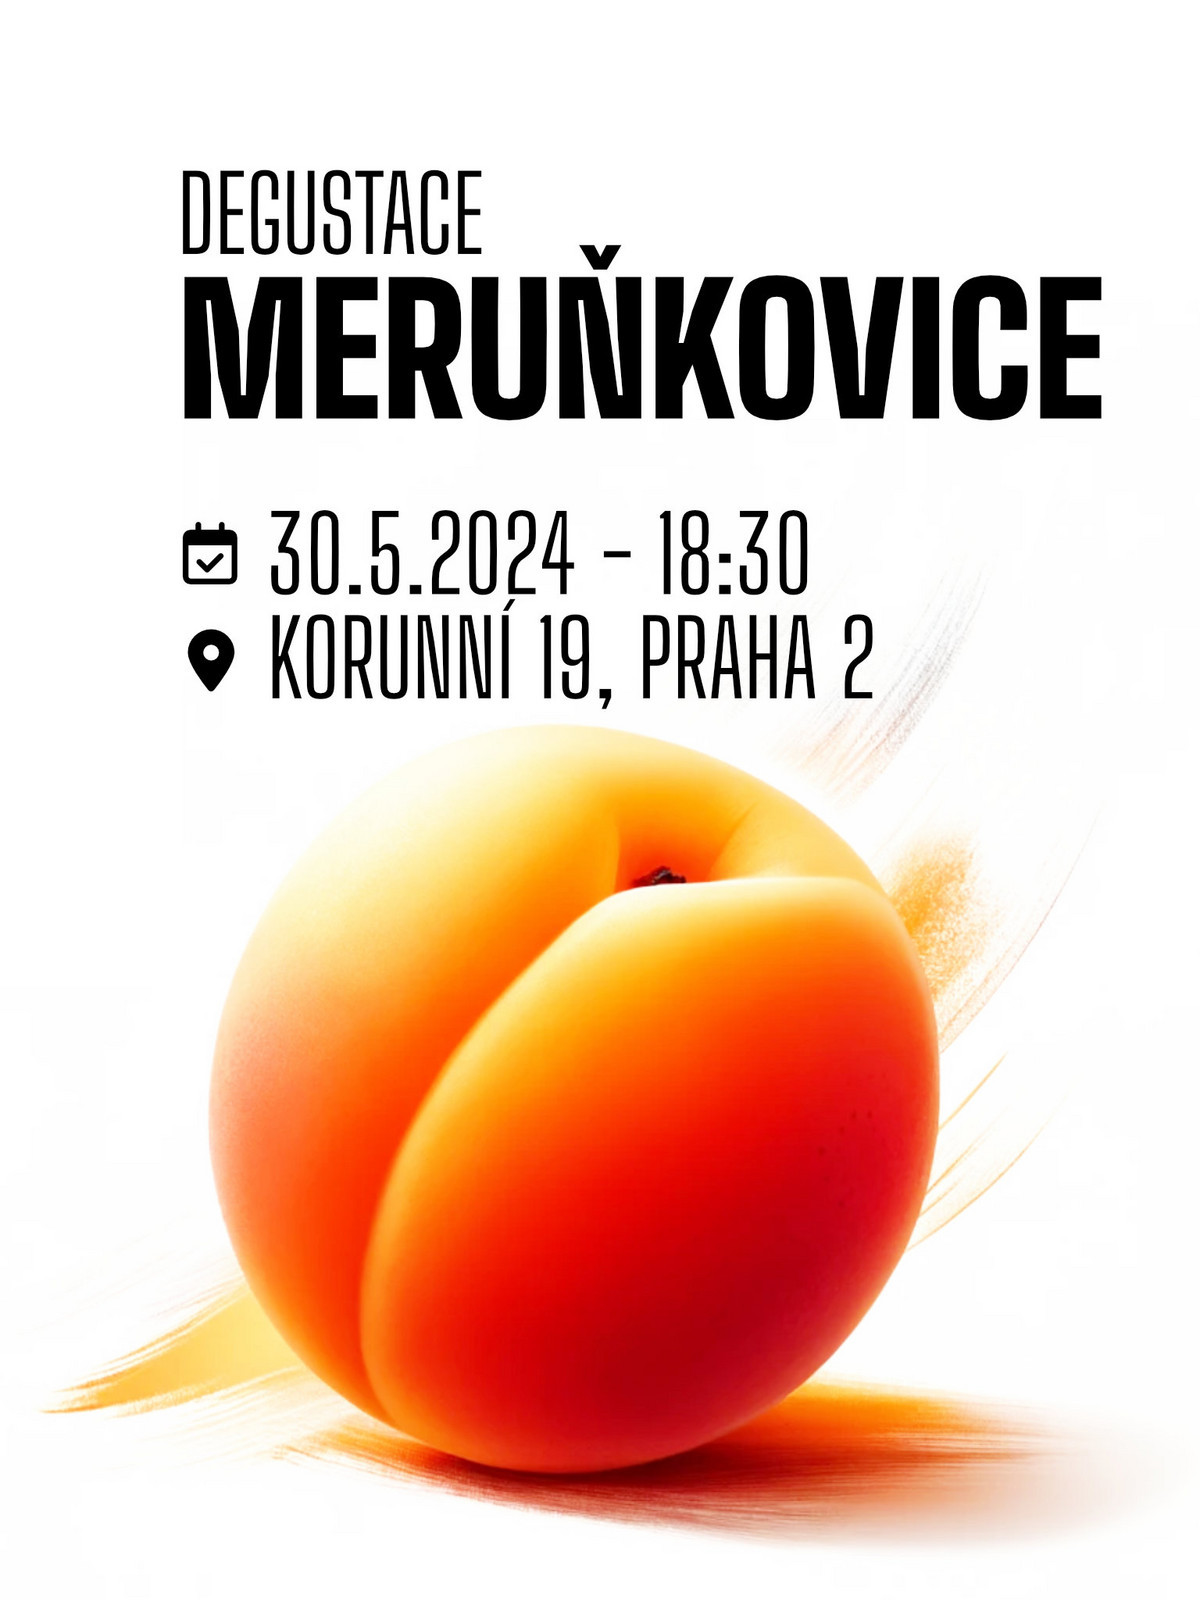 Lihovarek.cz  30|5 - Degustace Meruňkovice